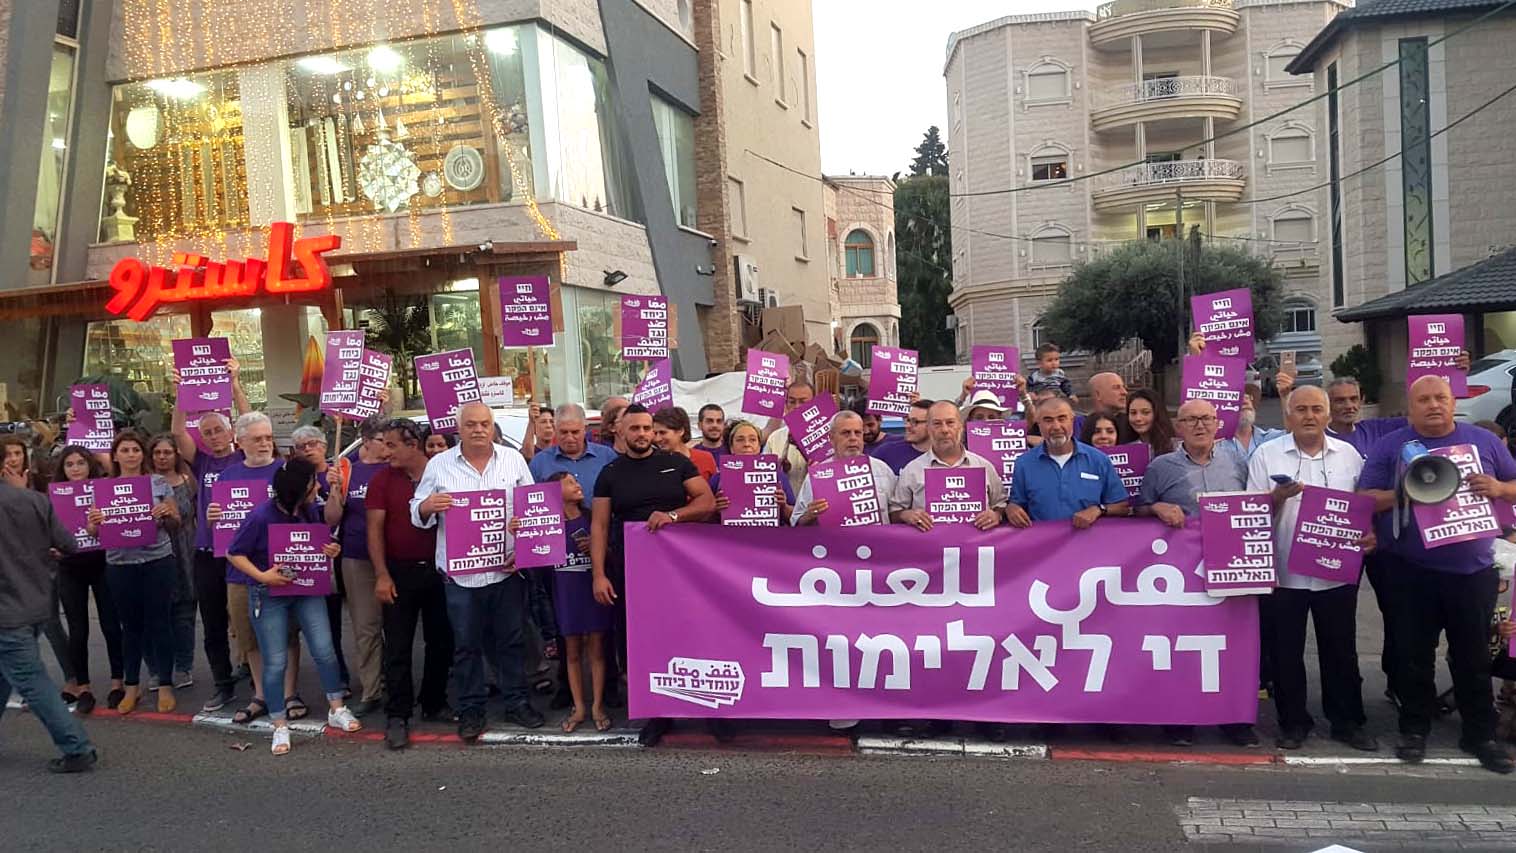 הפגנה בטמרה של תנועת 'עומדים ביחד' בדרישה לטיפול ממשלתי באלימות ובפשיעה בחברה הערבית, 12 באוקטובר 2019 (צילום: שי ניר)